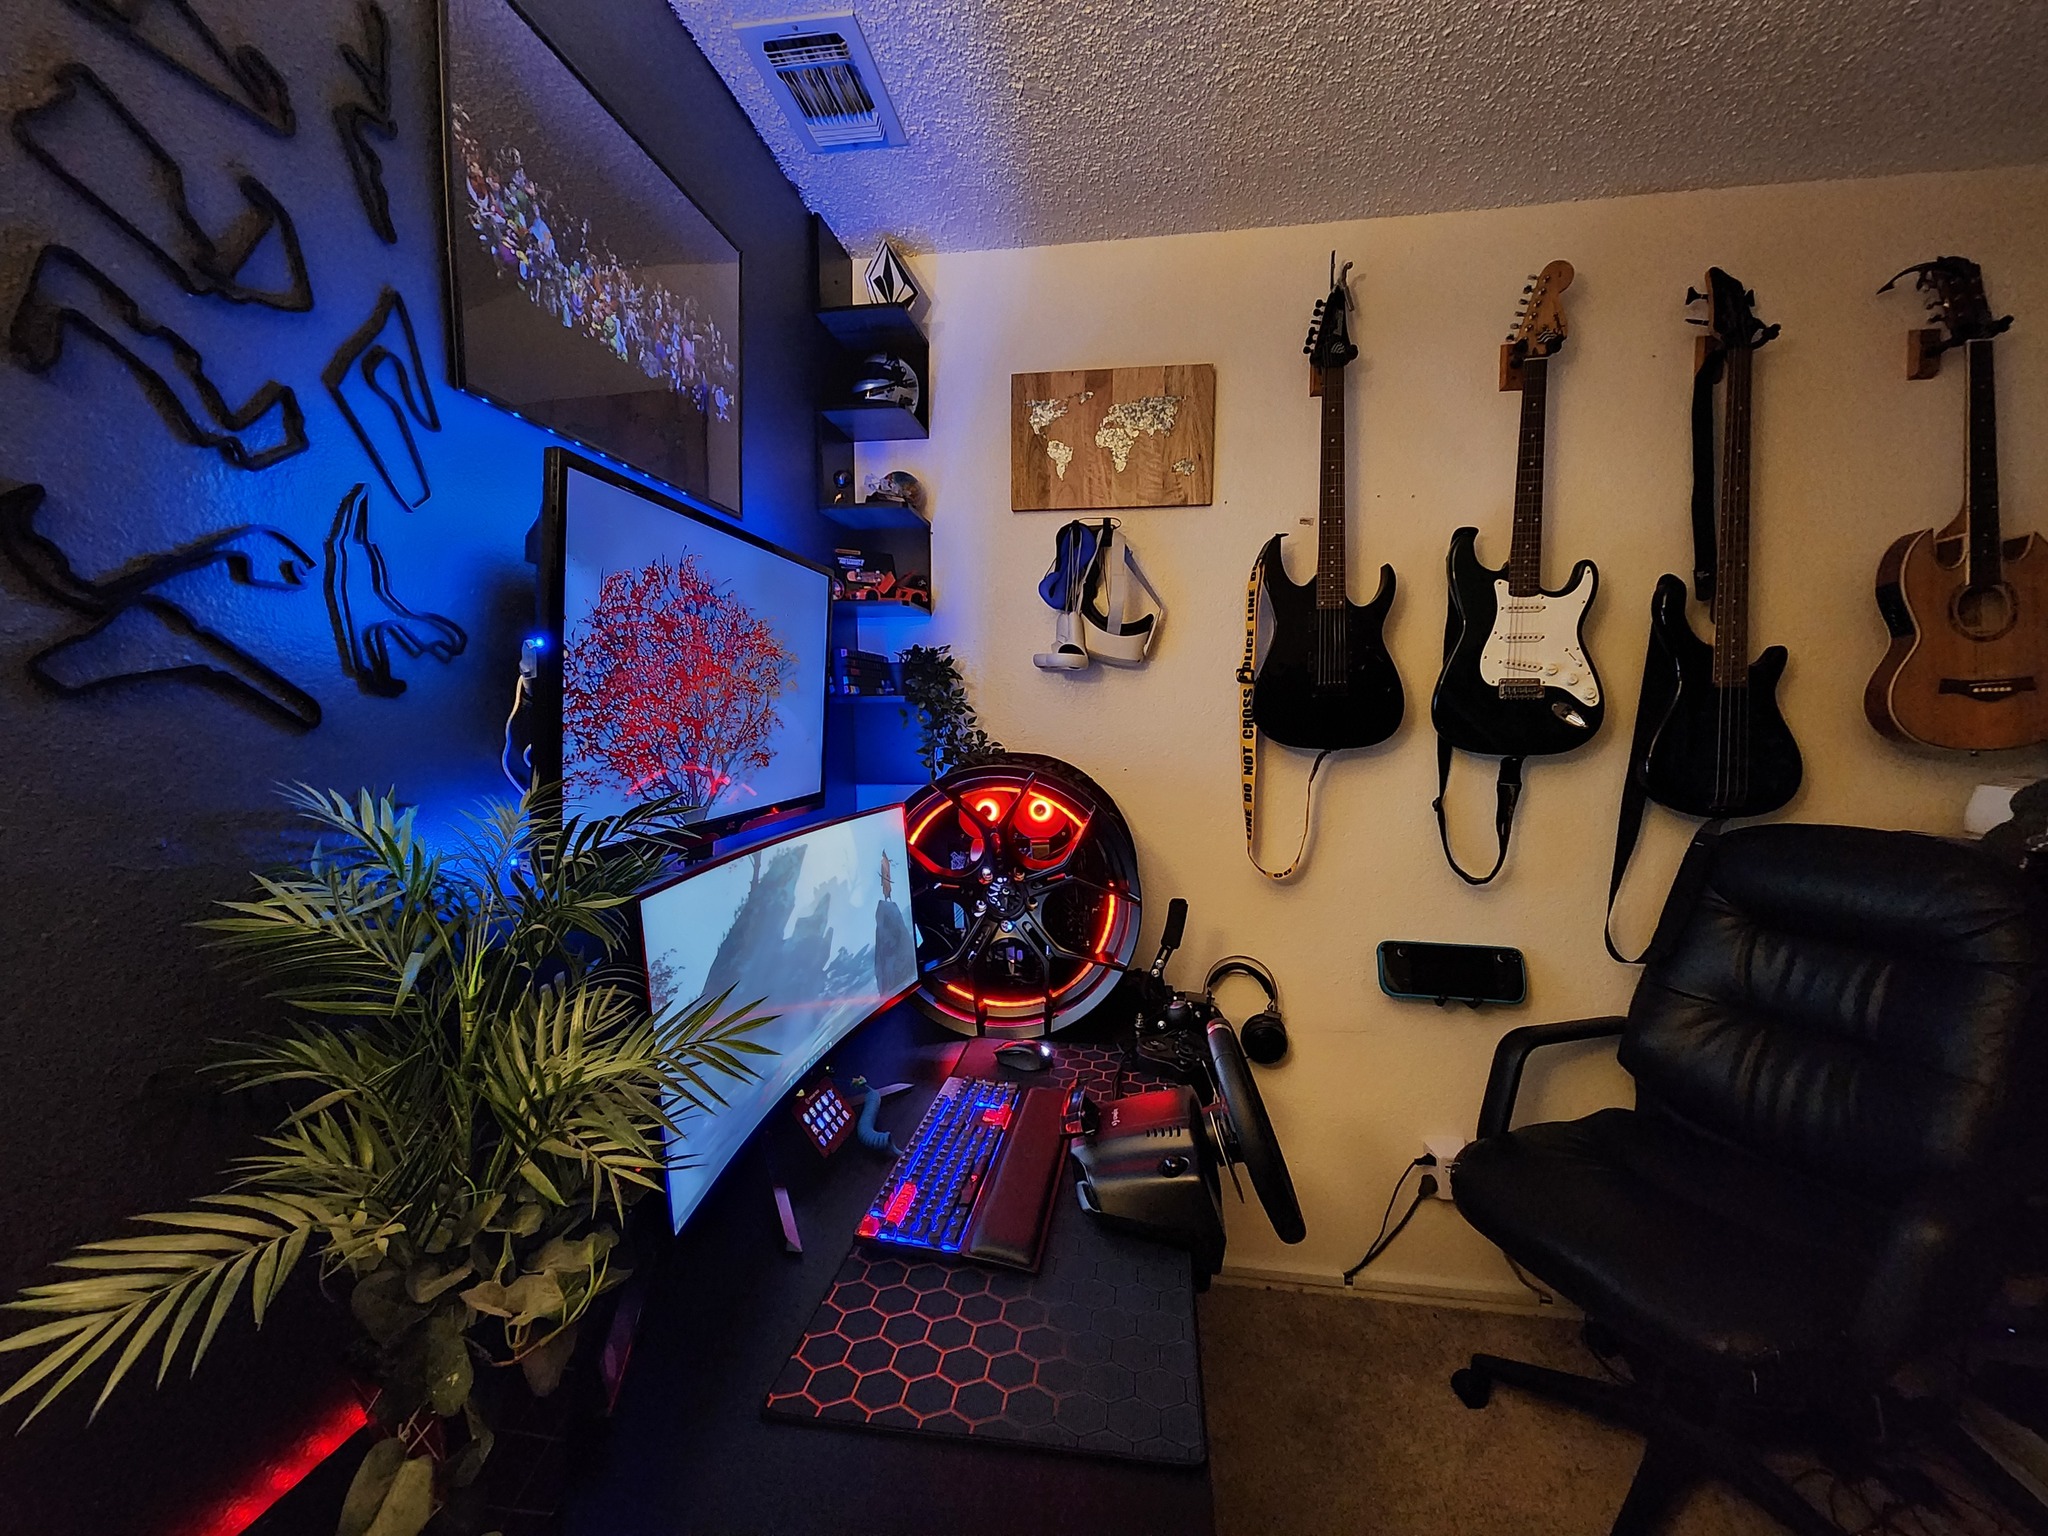 Le PC de jeu sur roue de voiture dans une salle de jeux avec des guitares montées